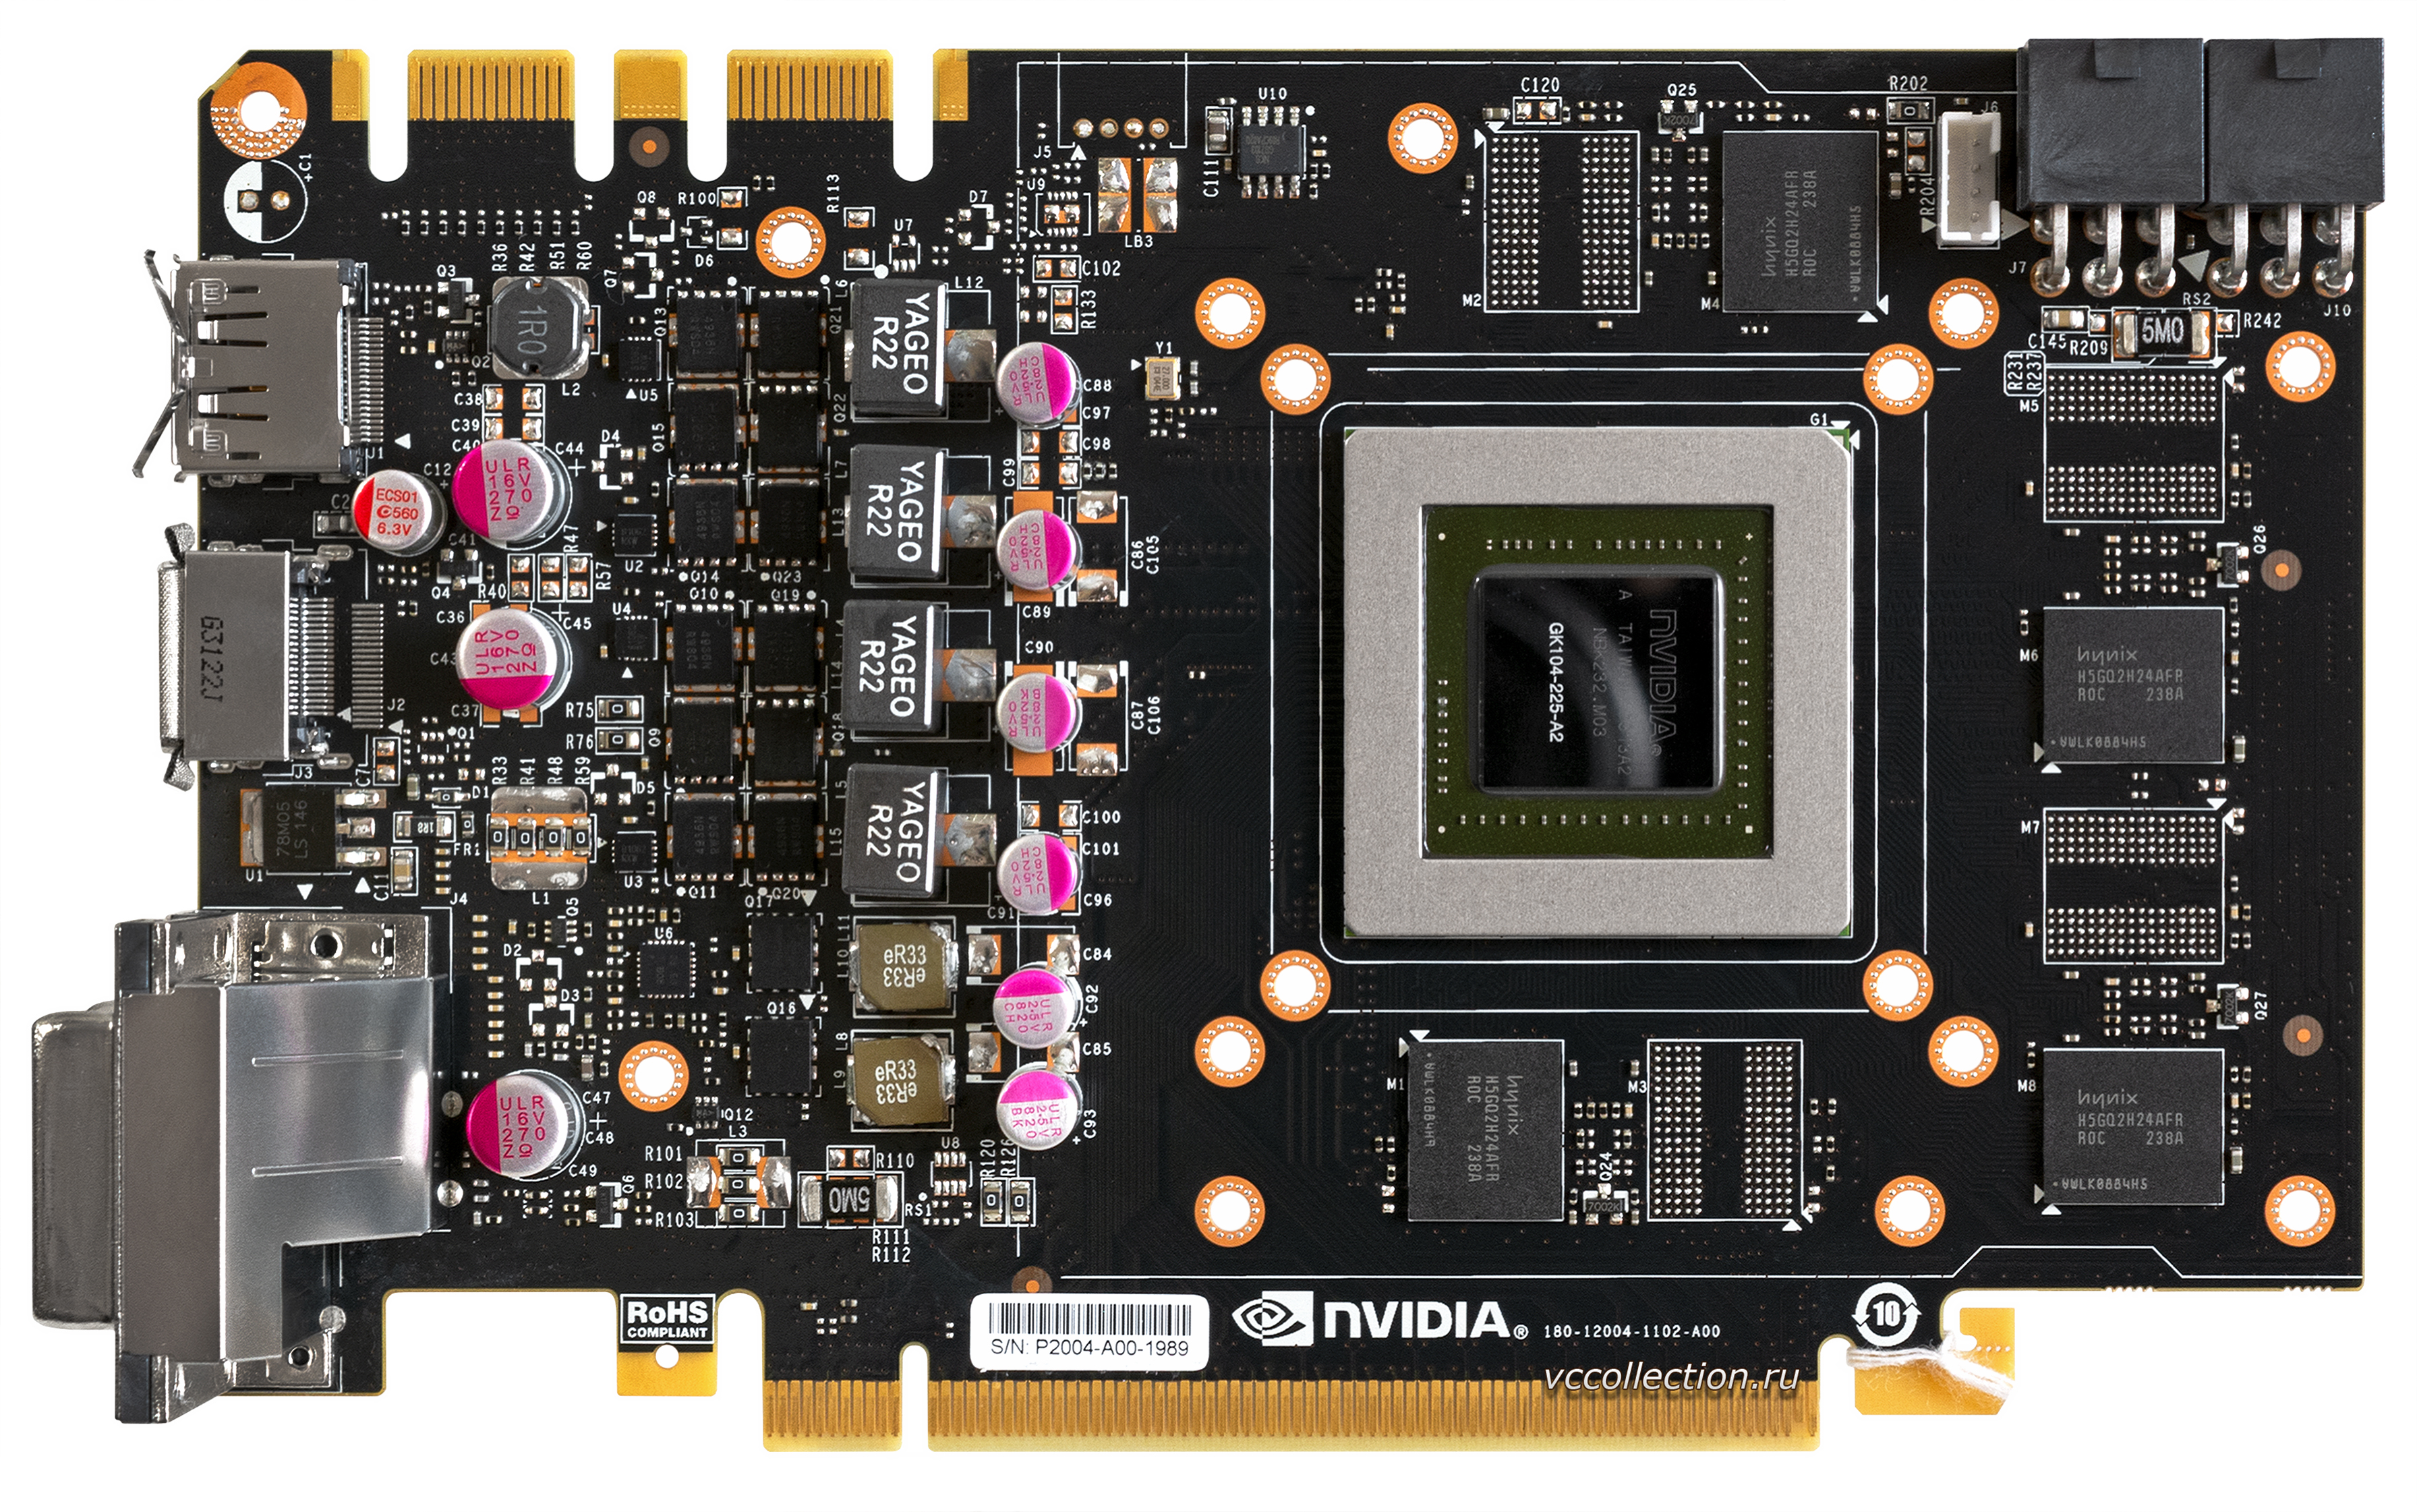 Схема новой видеокарты NVIDIA GeForce GTS 240